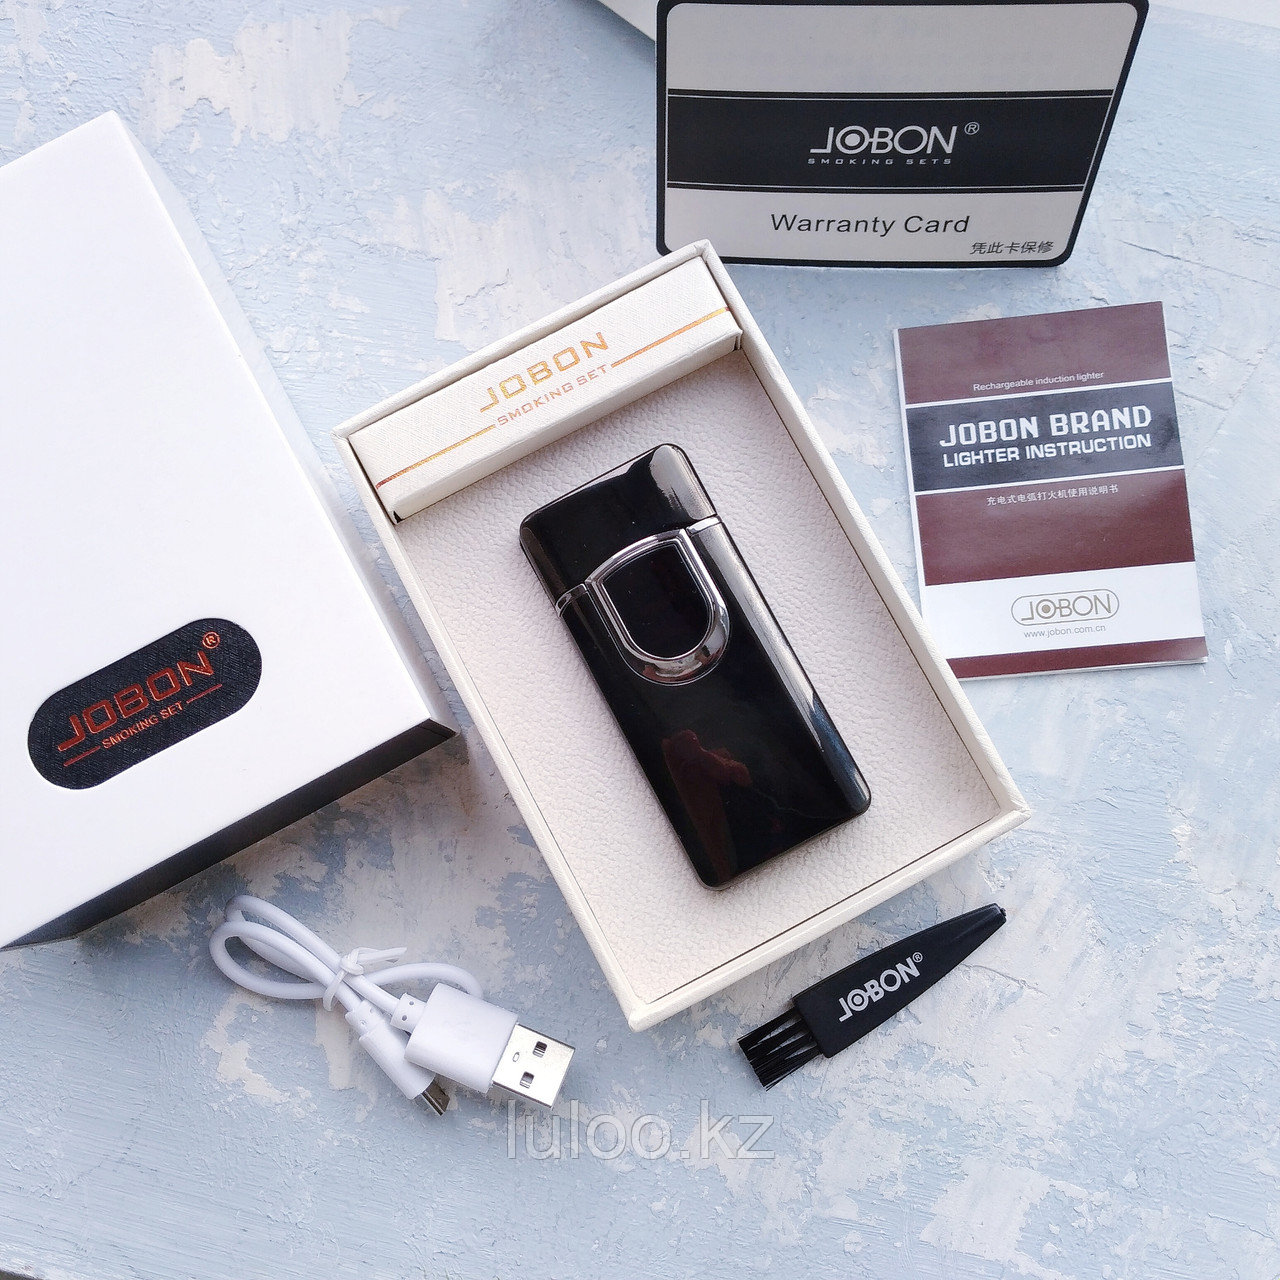 Электронная вращающаяся USB-зажигалка  "JOBON" в подарочной коробке, черная., фото 1